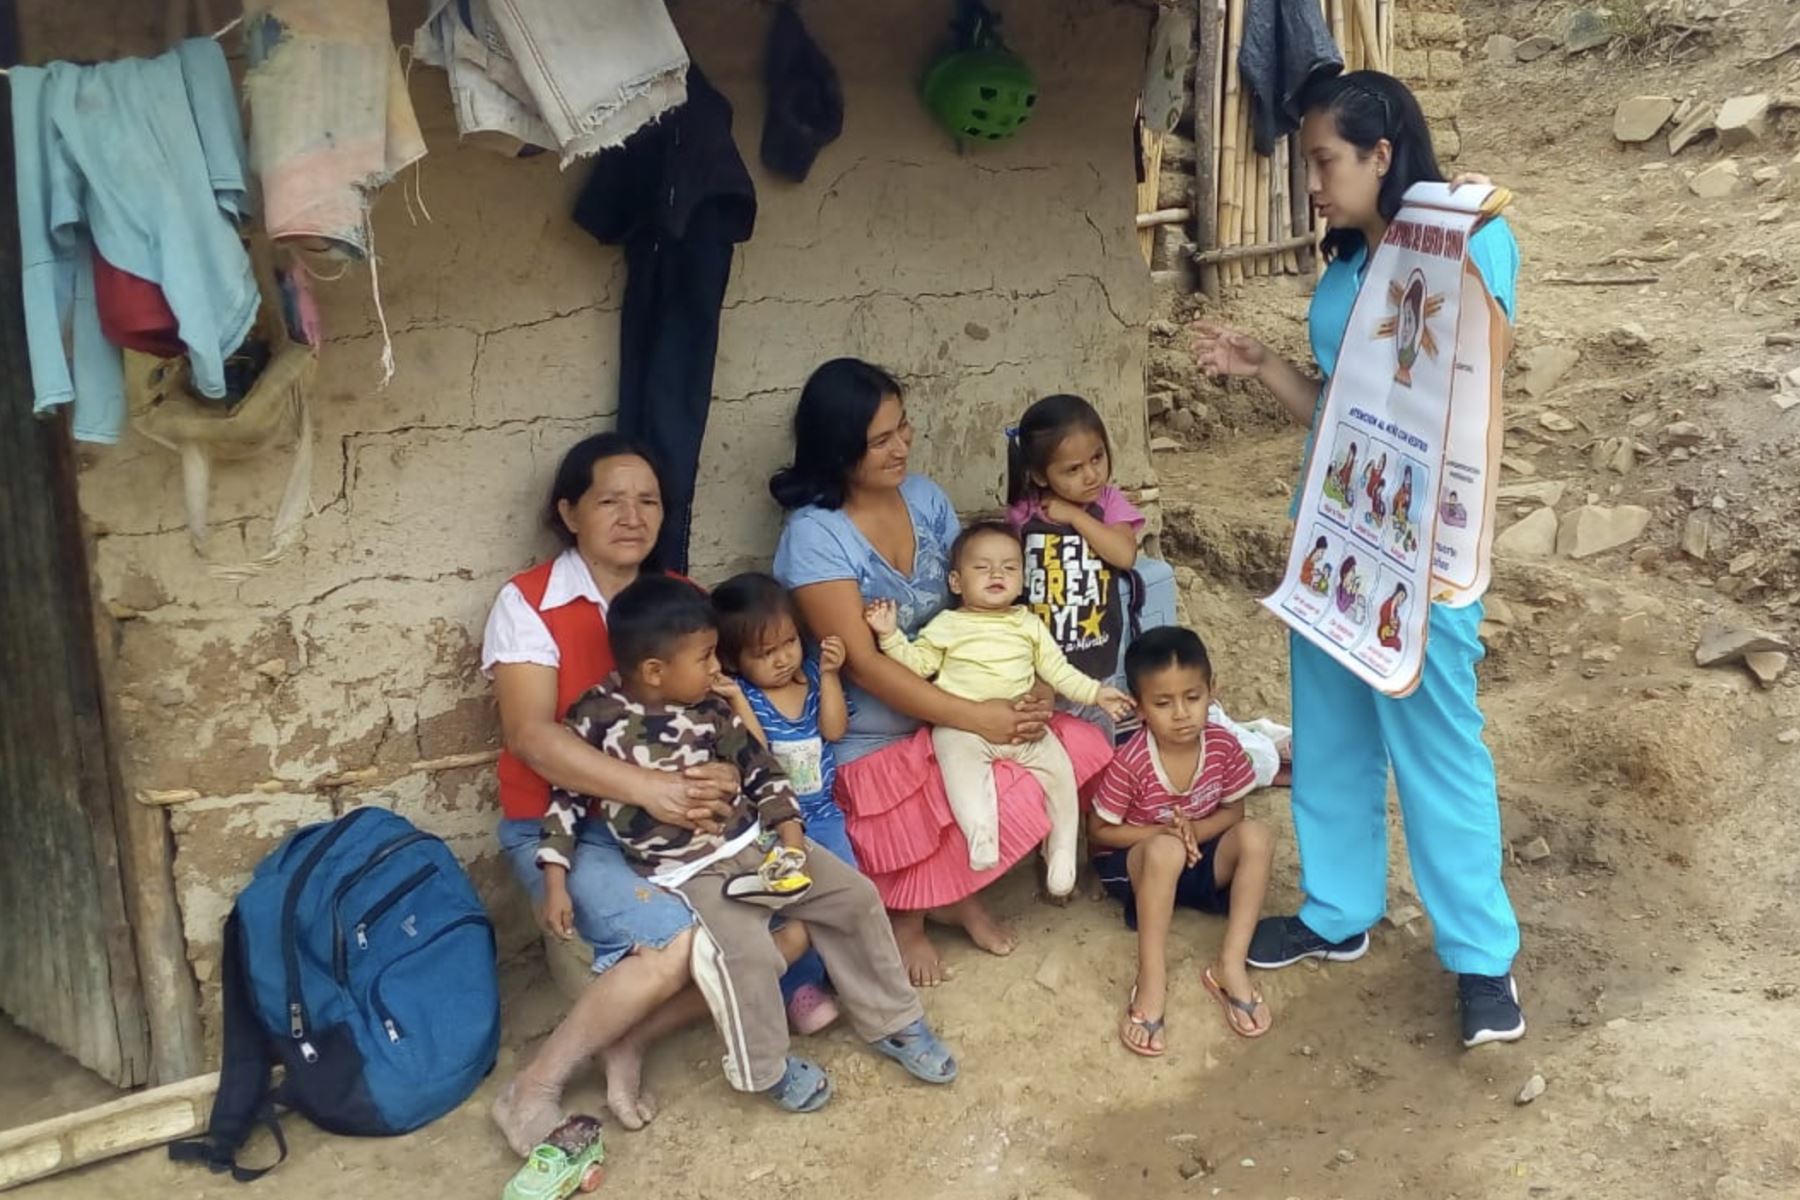 Edid Aurora Chumacero Holguín, la enfermera heroína, en pleno trabajo con las mujeres y sus hijos e hijas del caserío Linderos de Maray en Morropón, Piura. ANDINA/Difusión